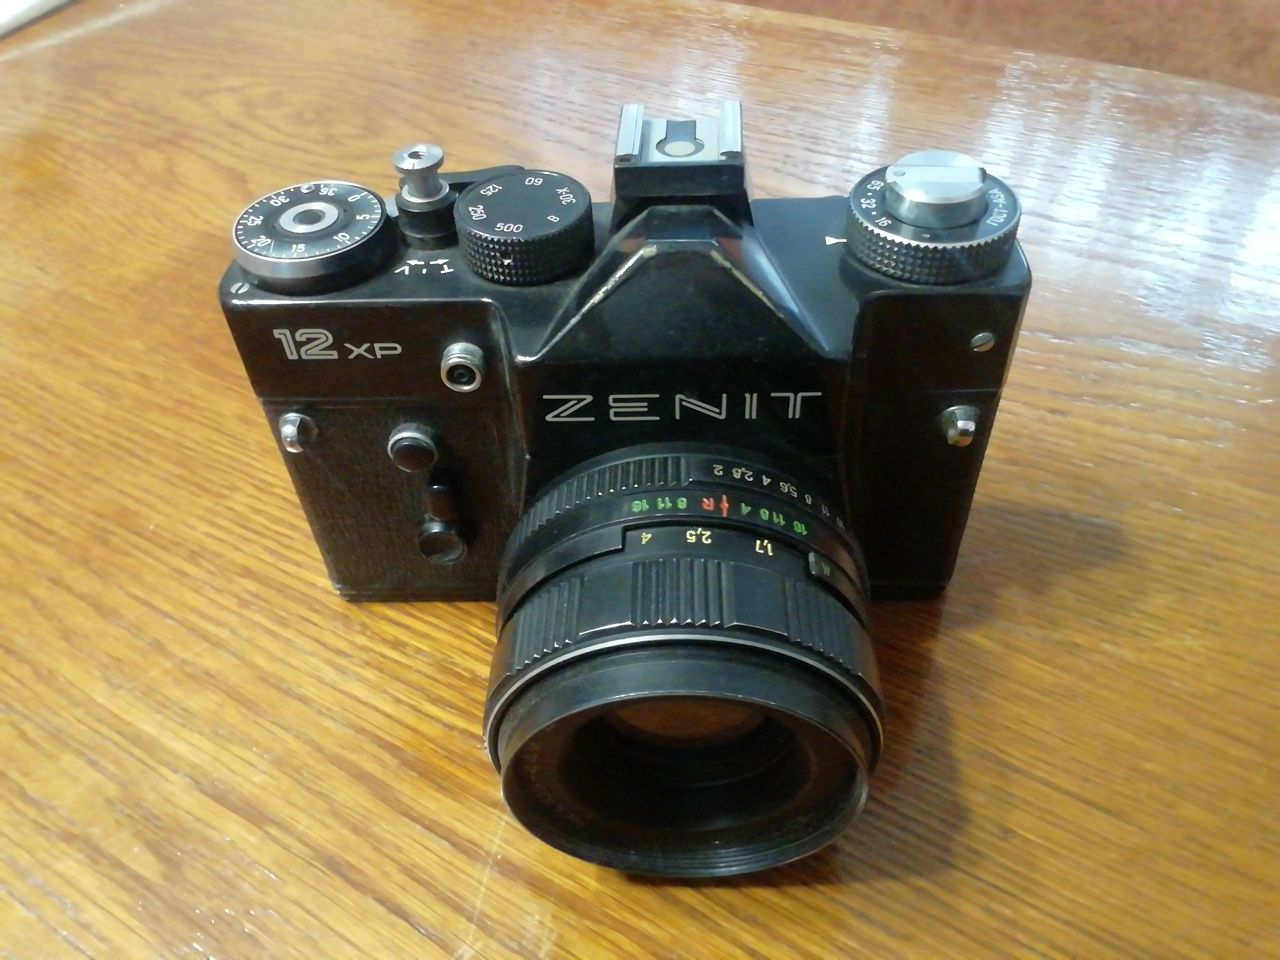 Aparat fotograficzny Zenit 12XP idealny kultowy